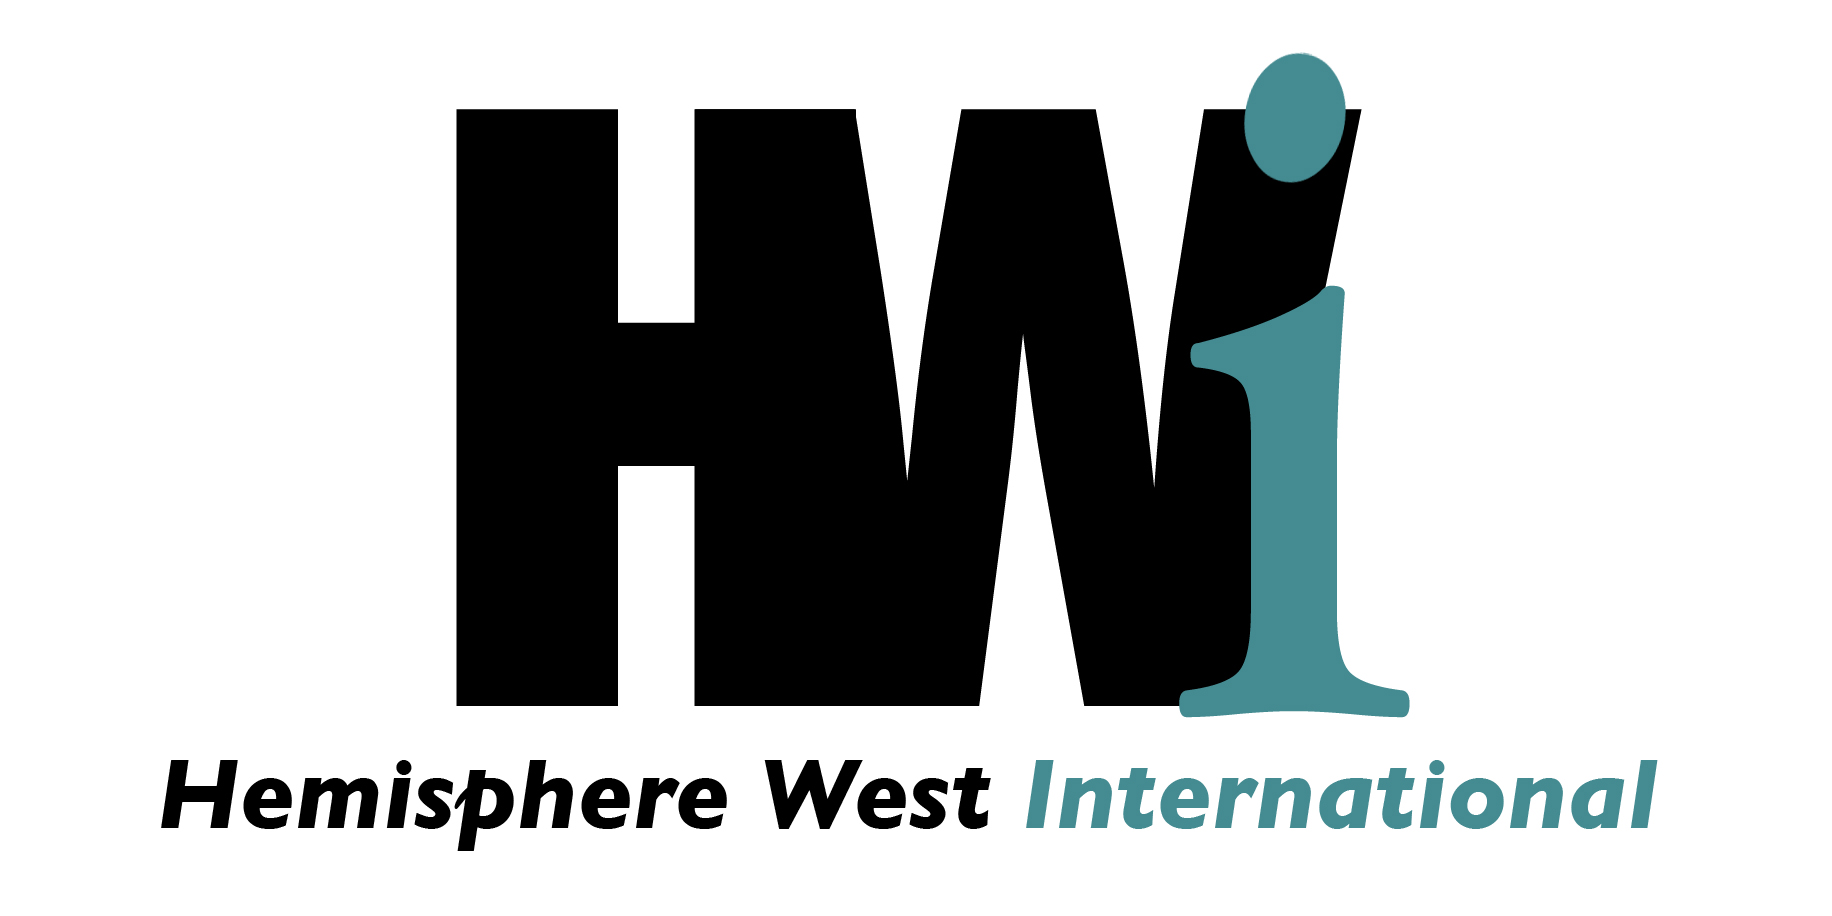 Hemisphere West International